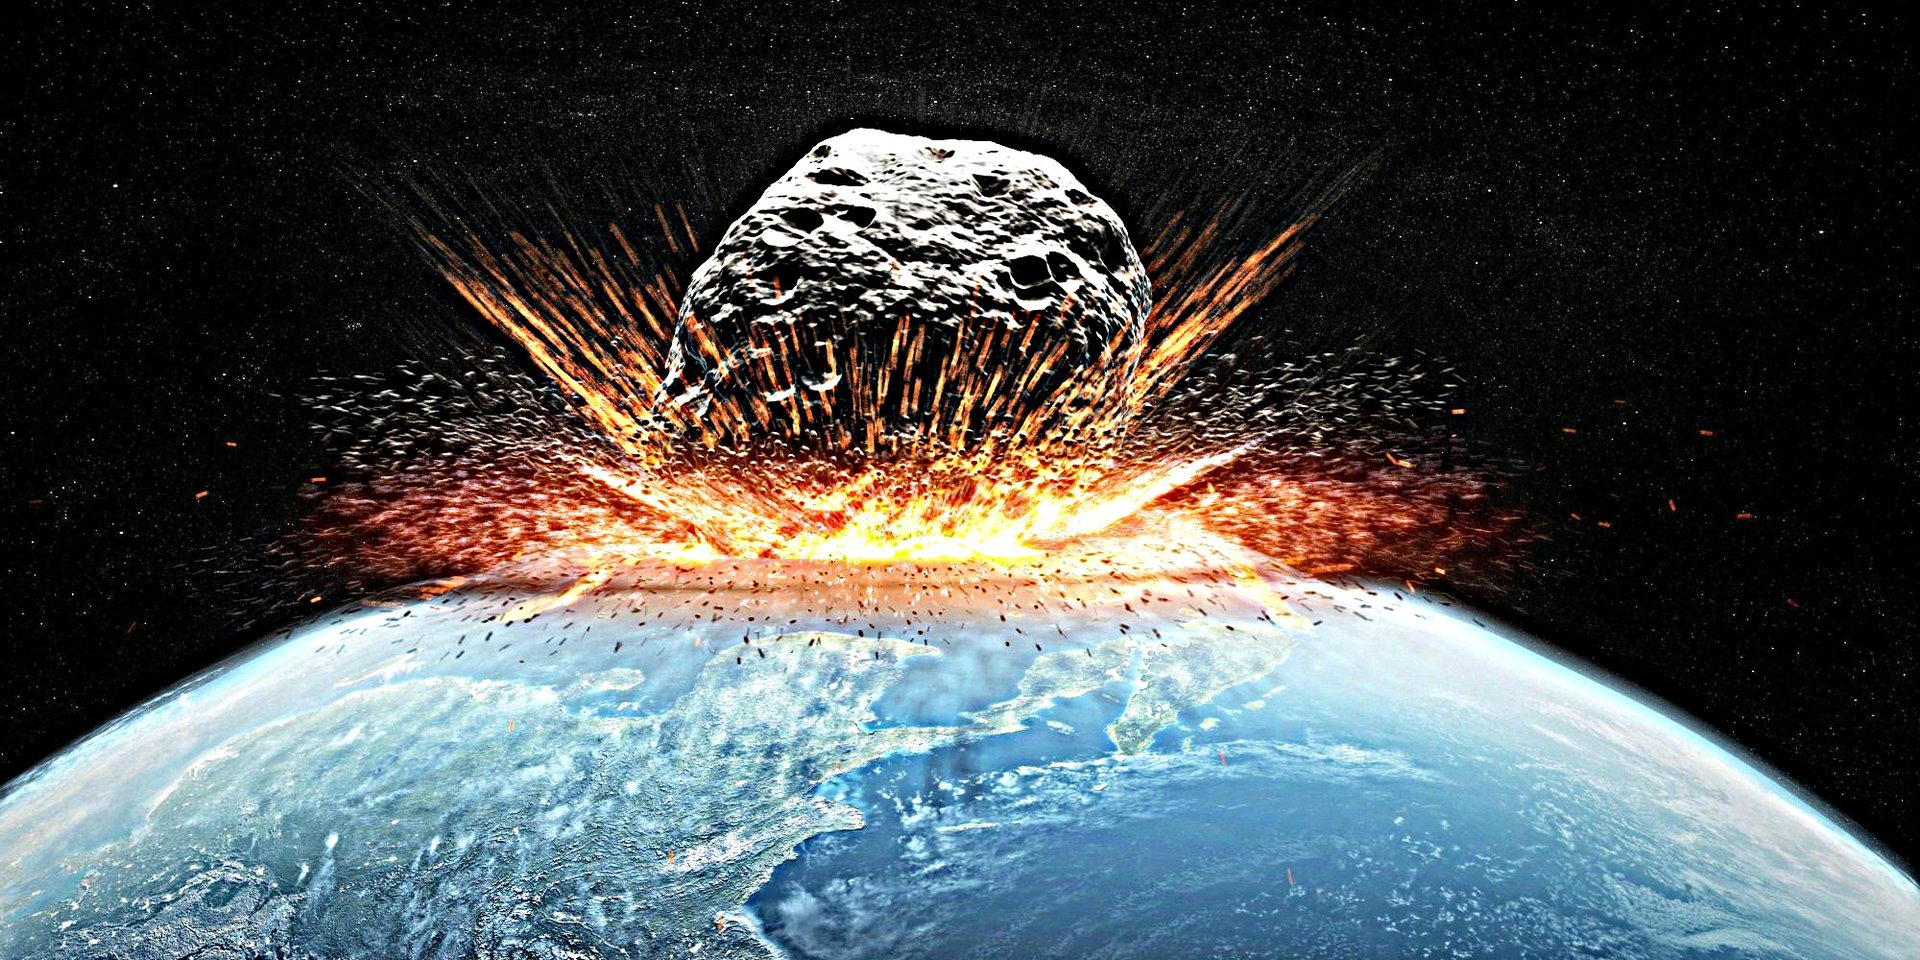 Aστρονόμοι ανακάλυψαν πότε θα έρθει το τέλος του κόσμου από μετεωρίτη